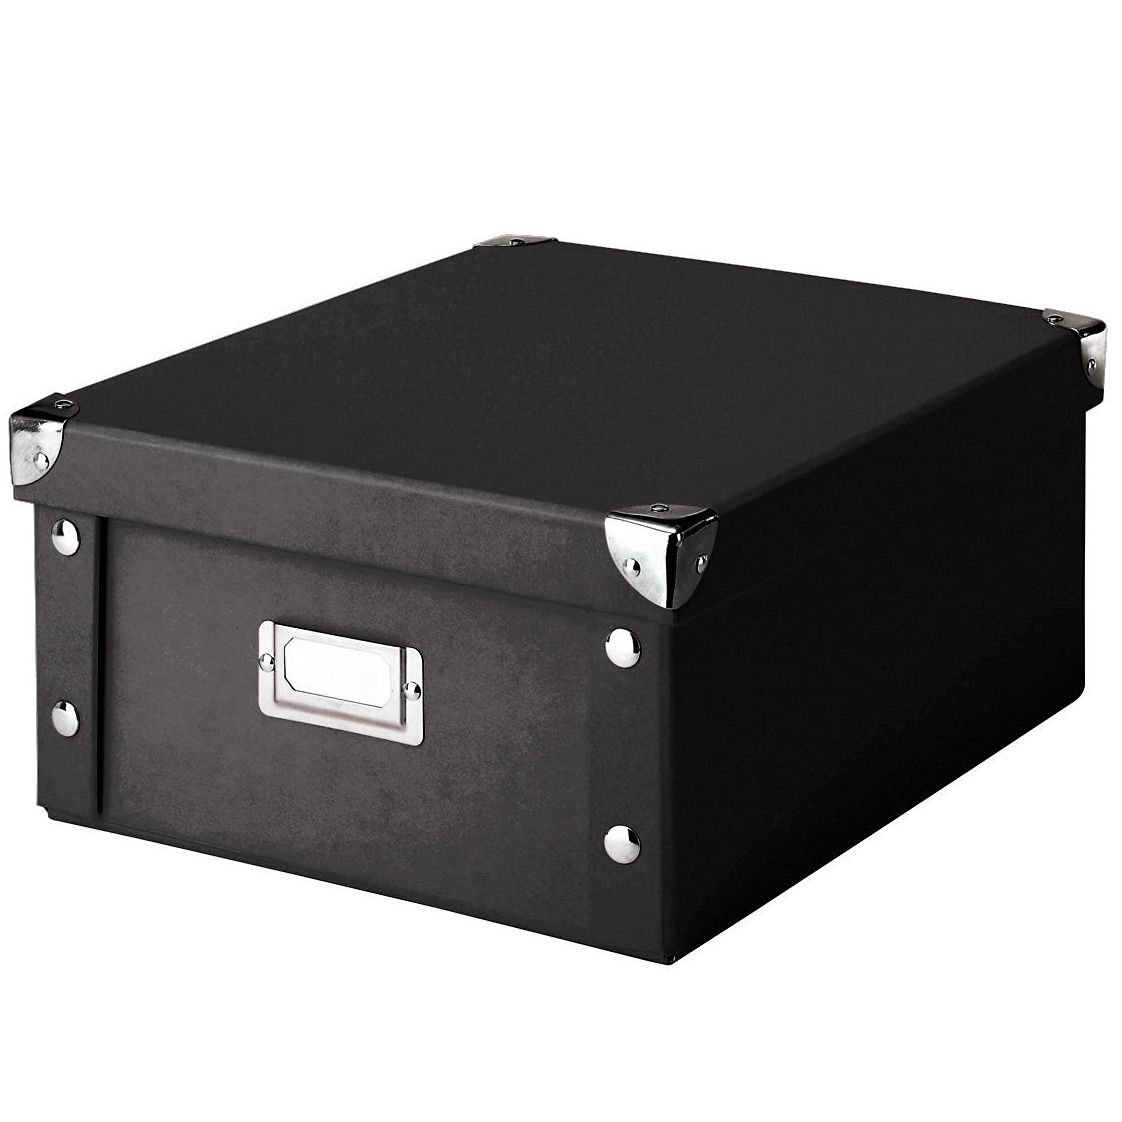 Box pro skladování, 31x26x14 cm, barva černá, ZELLER - EMAKO.CZ s.r.o.